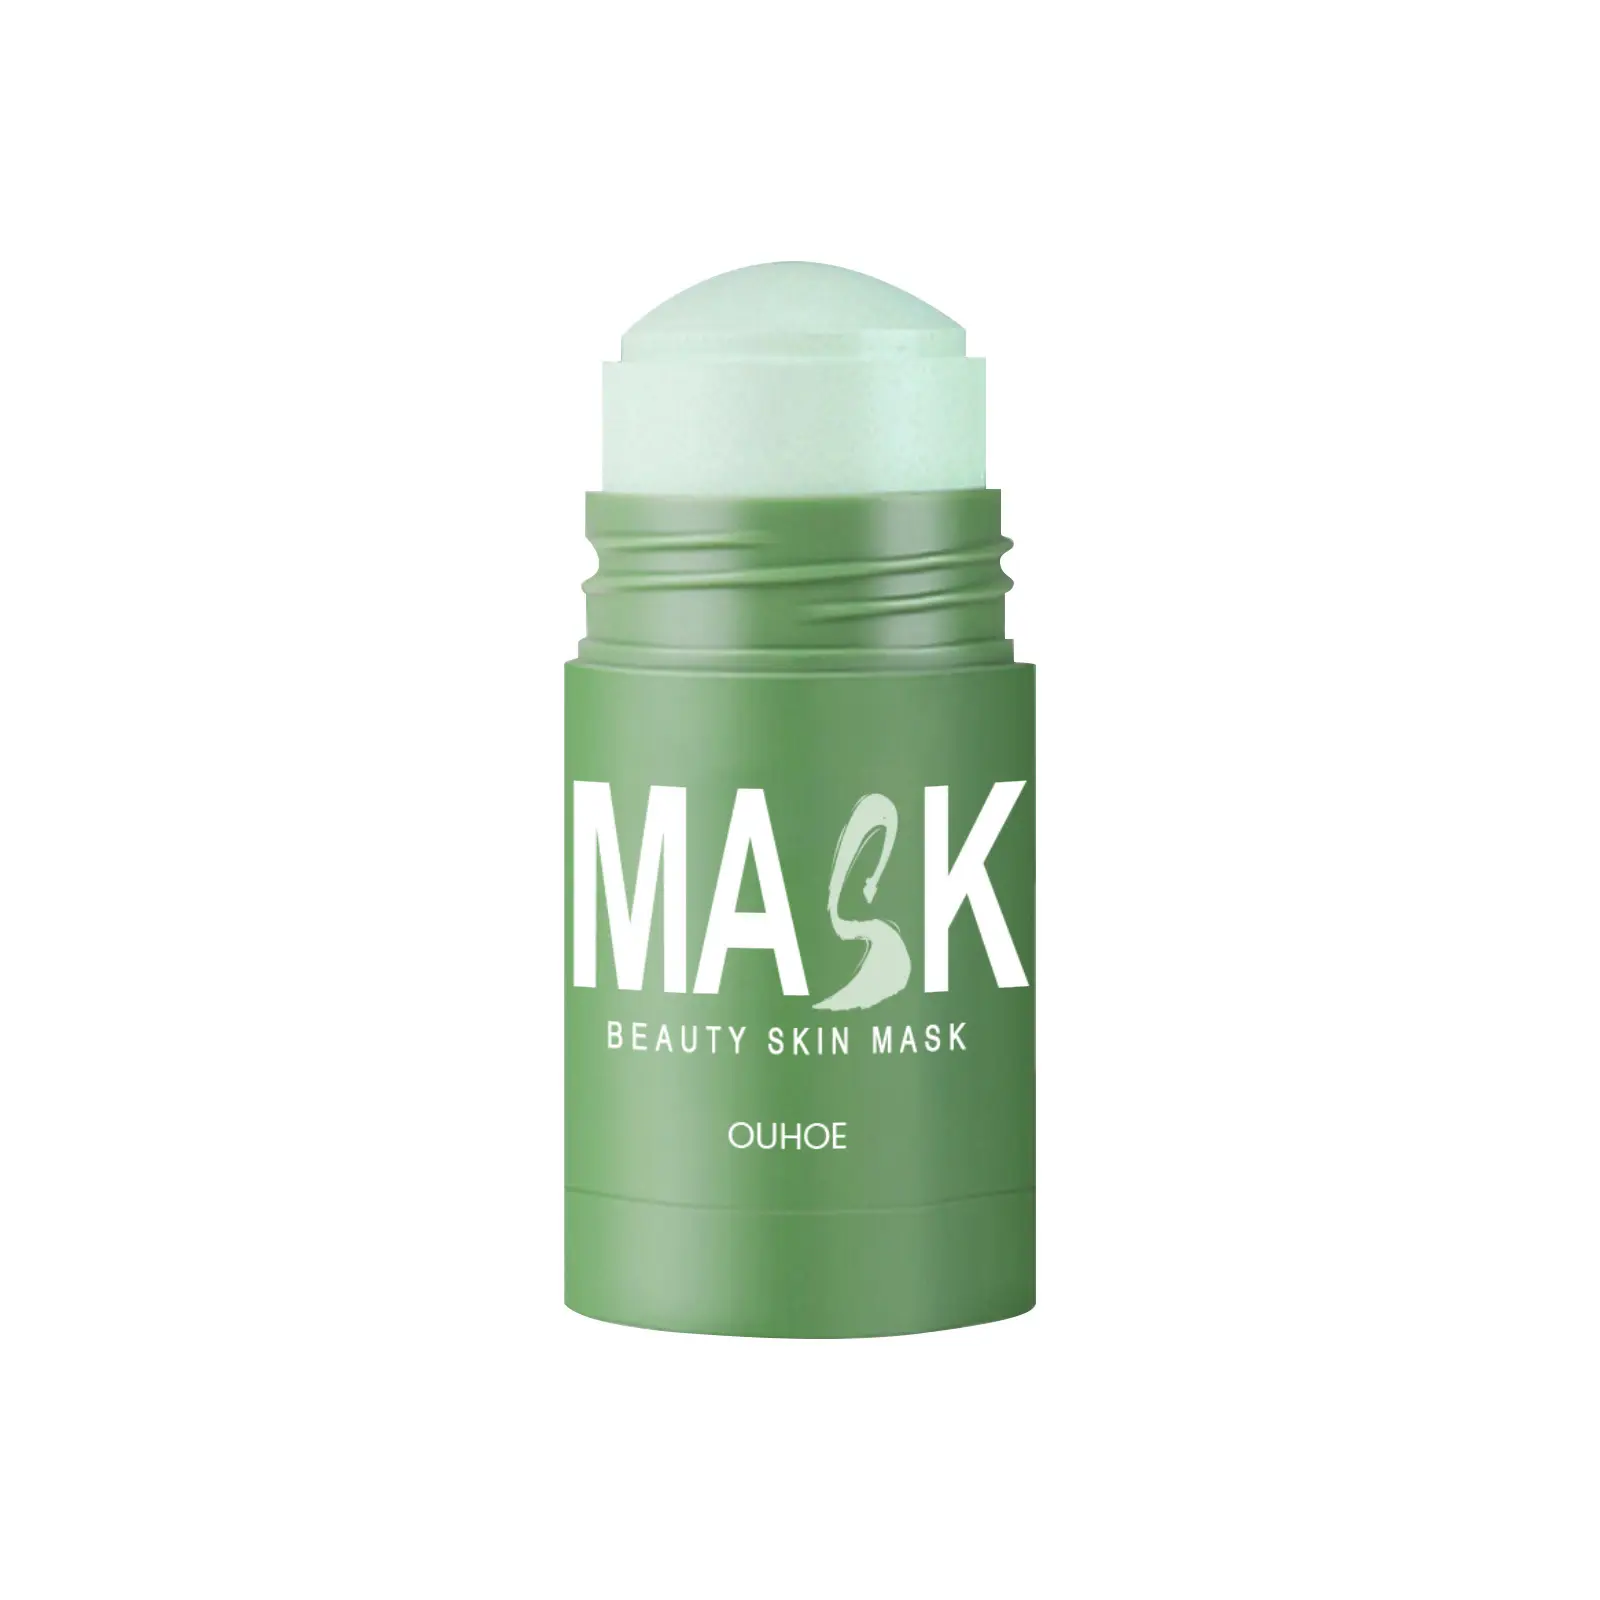 OUHOE Green Tea Stick Mascarilla facial Limpieza profunda Acné Tratamiento de espinillas Reafirmante Poros Hidratante Blanqueamiento Daub-Type Mud